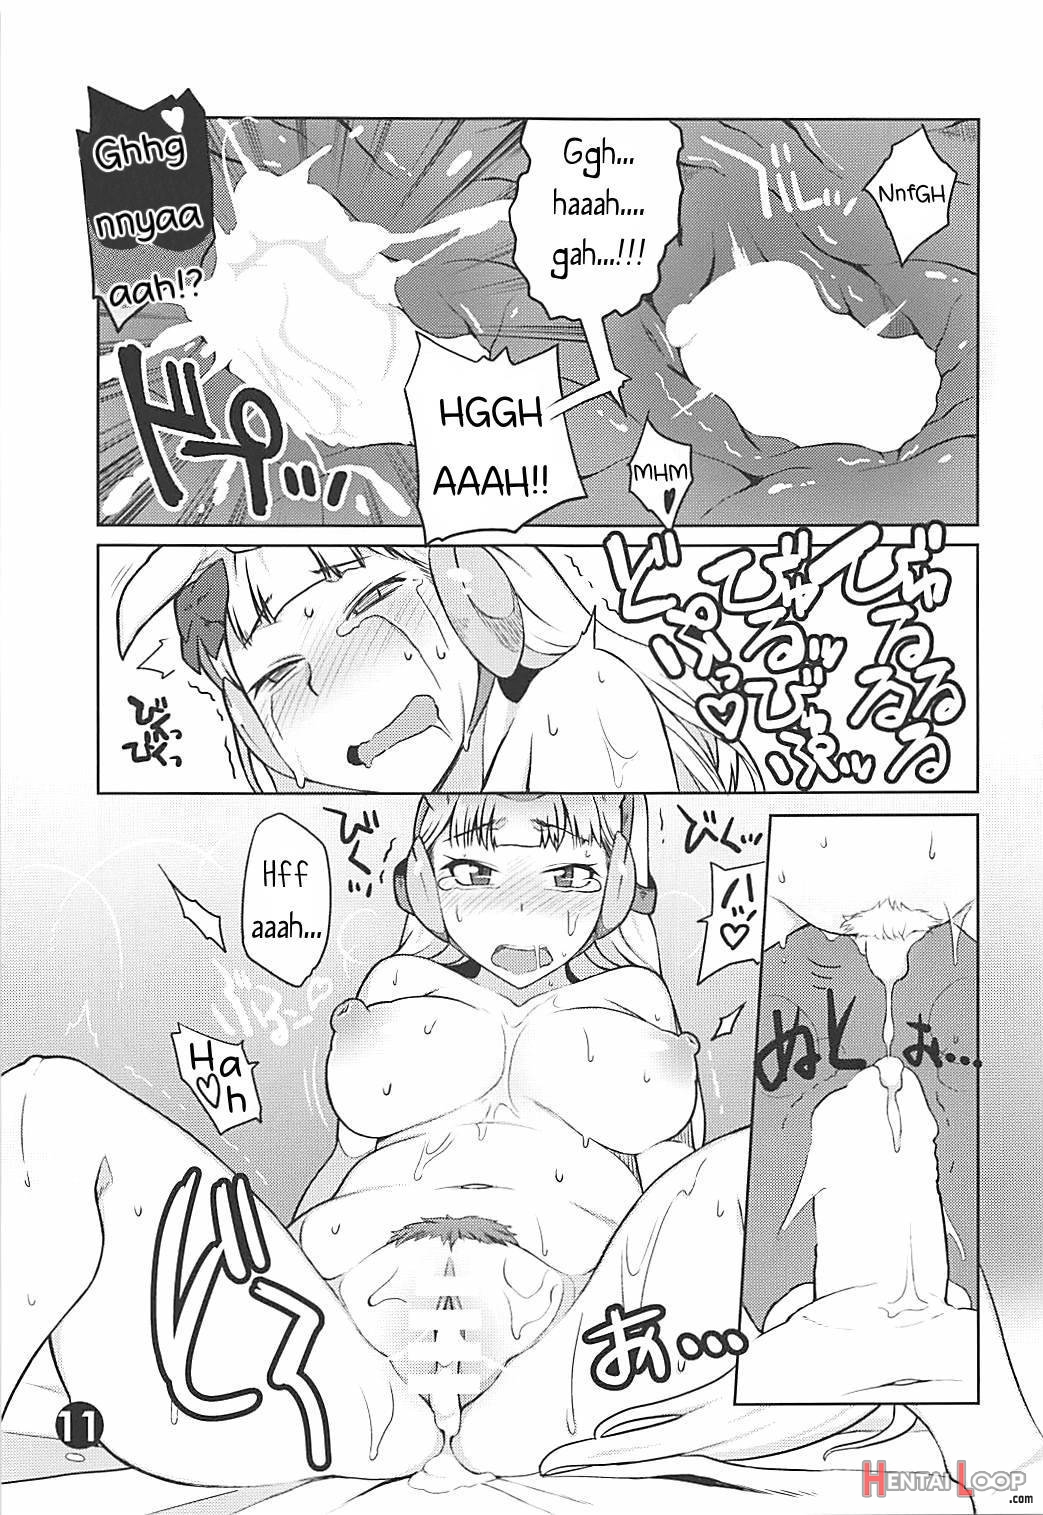 Gorushi-chan Fan Kansha Day!! page 9